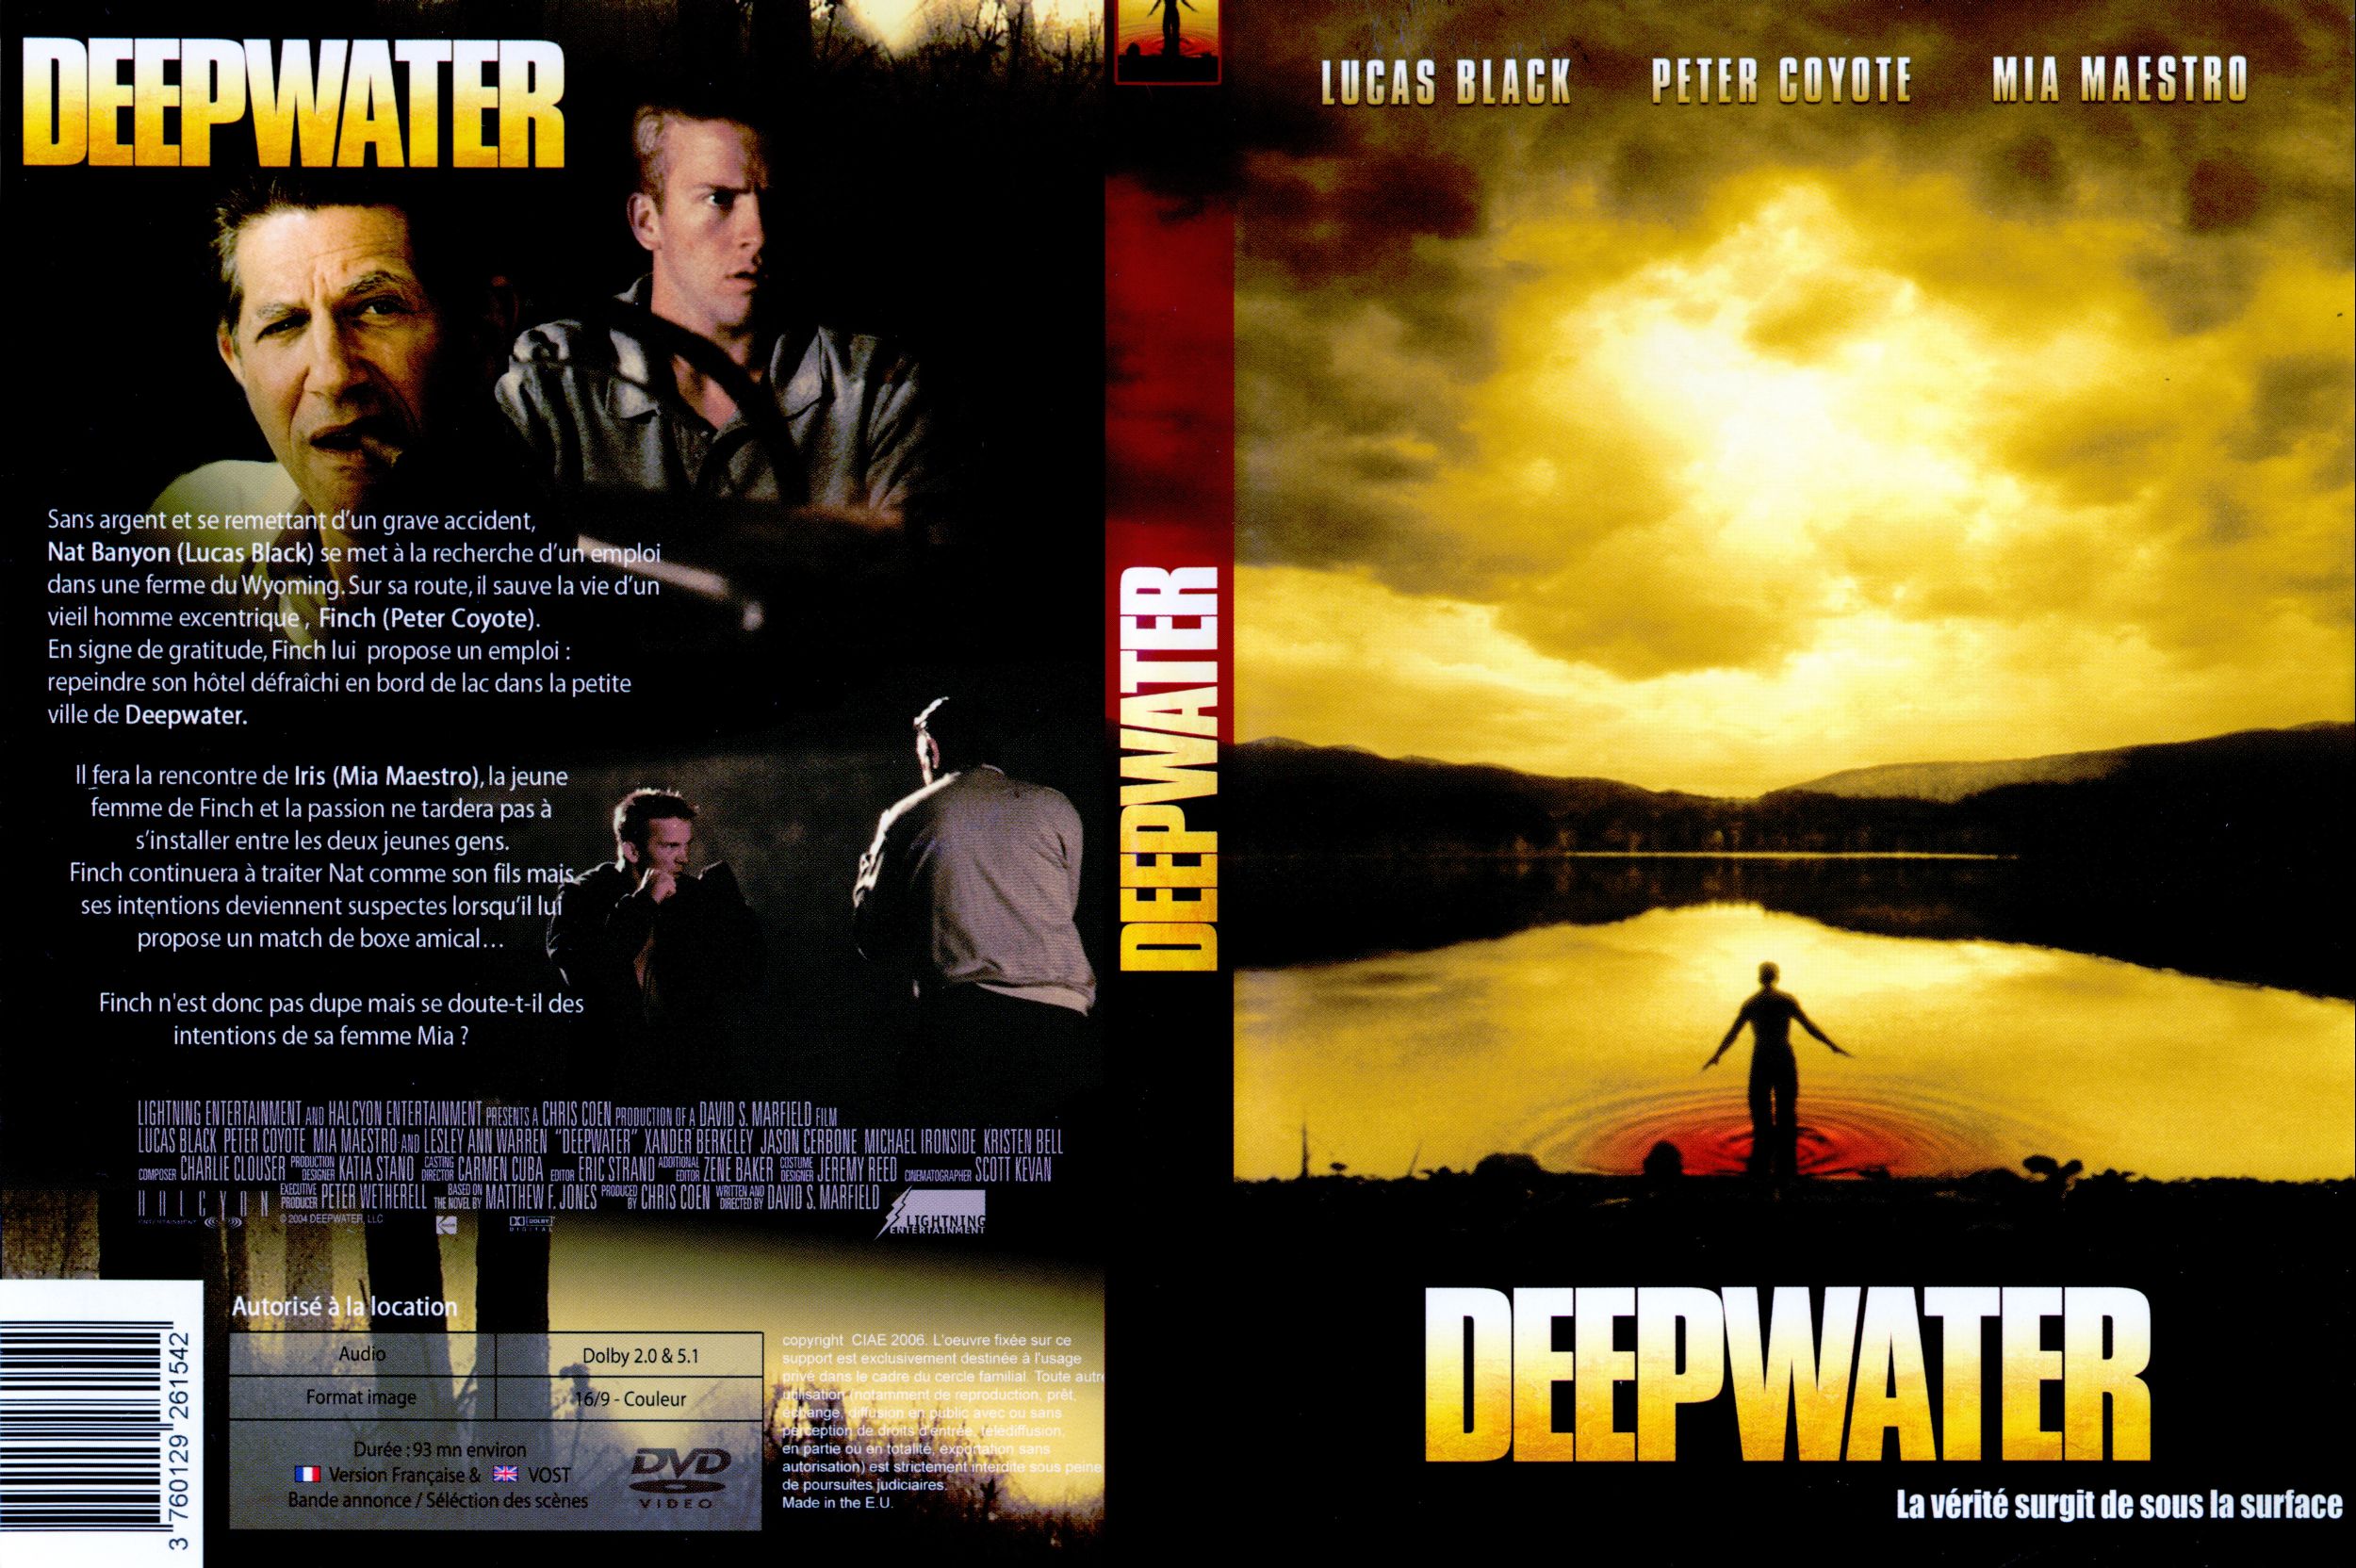 Jaquette DVD Deep water